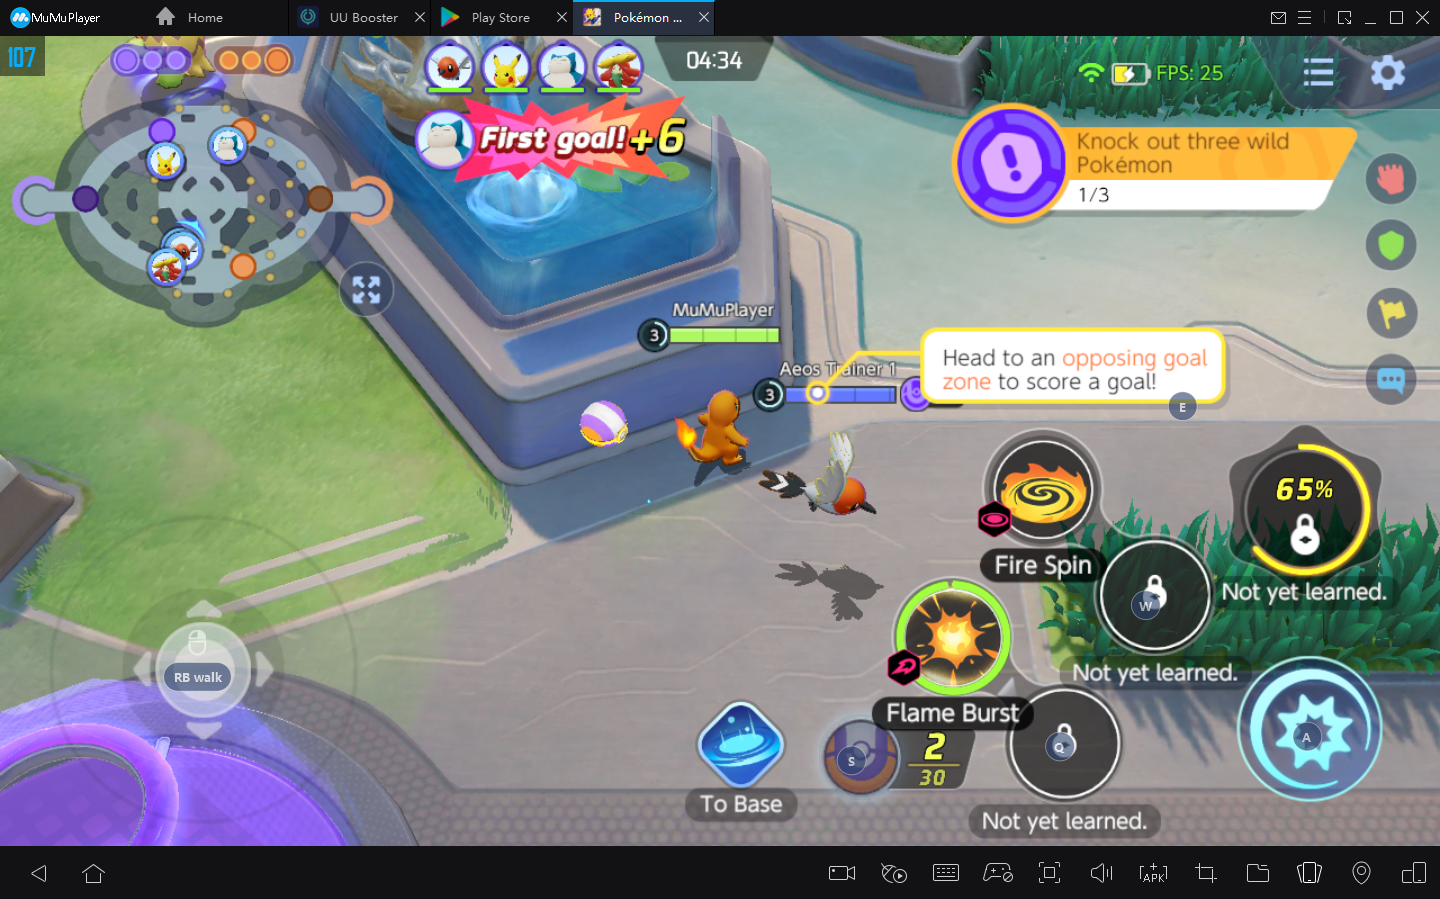 How to Play Pokémon Unite on PC with MuMu Player9